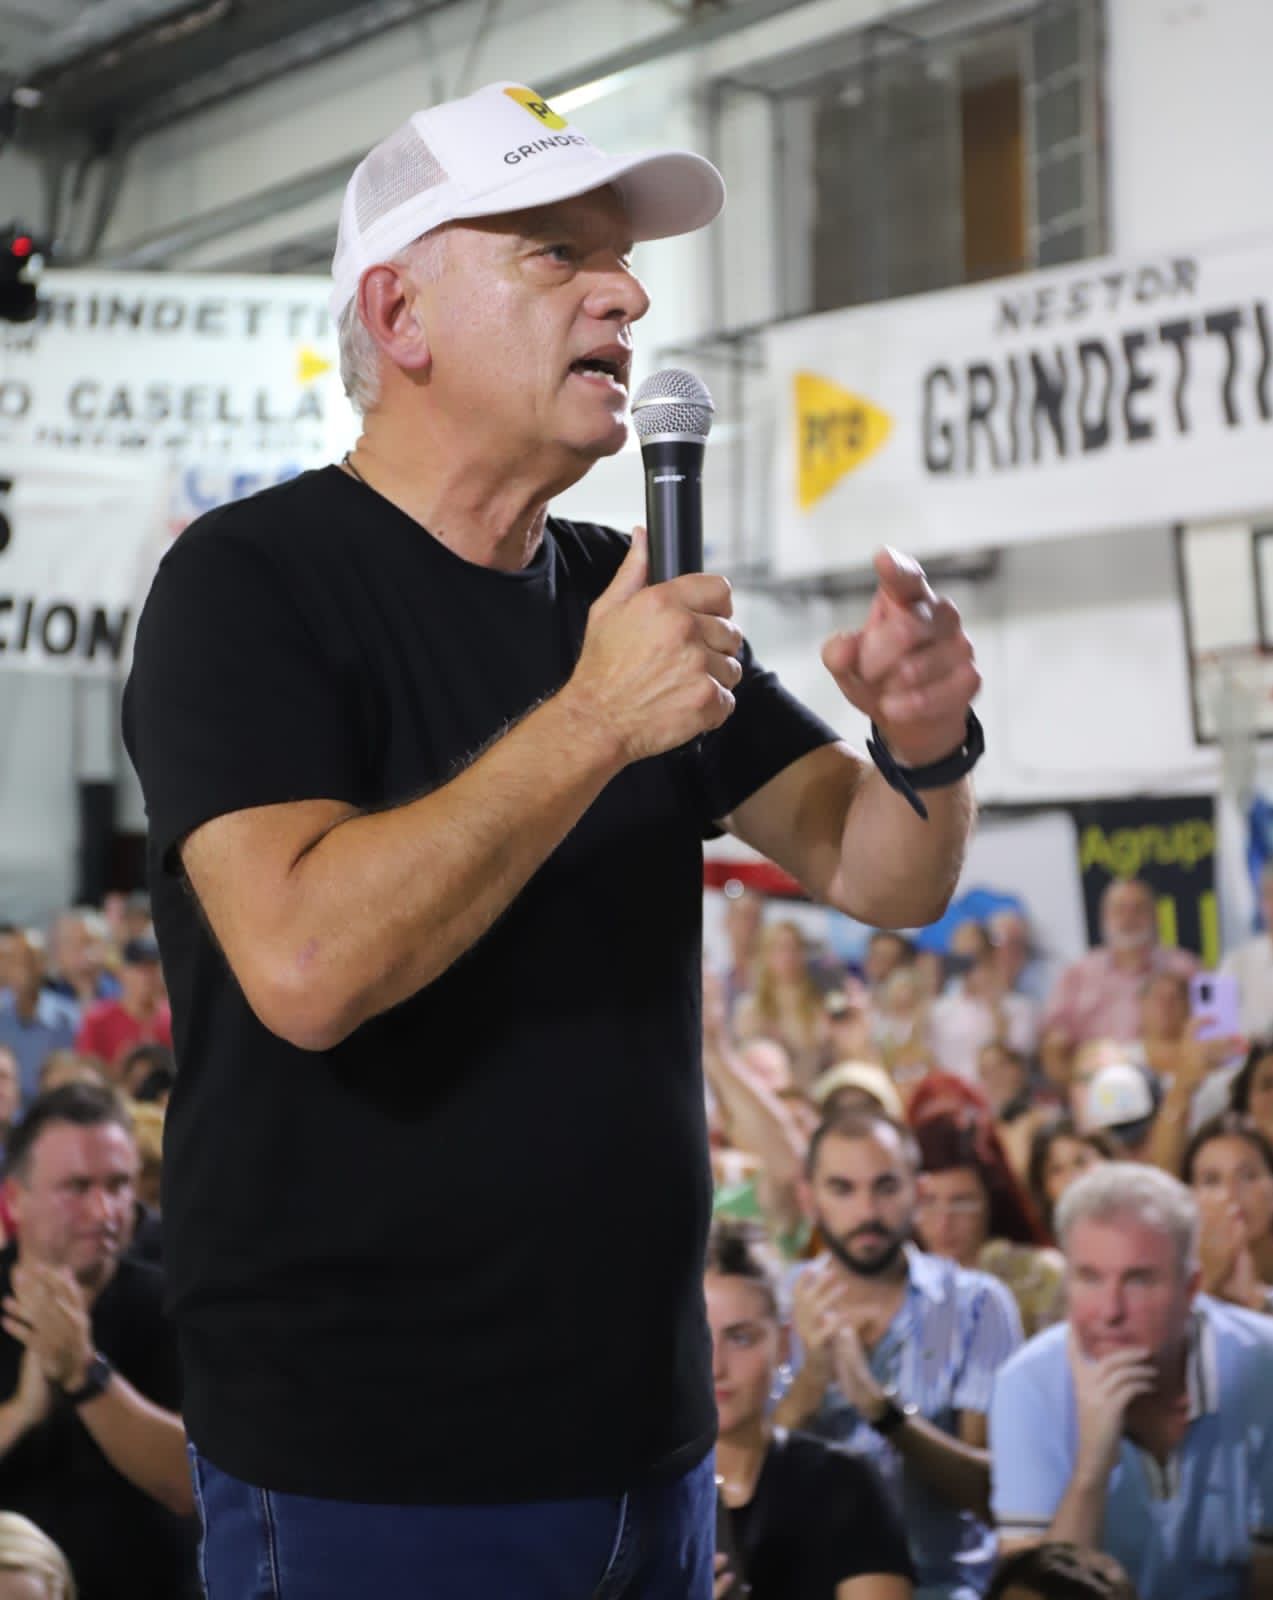 Grindetti habló ante cerca de 1000 vecinos y militantes